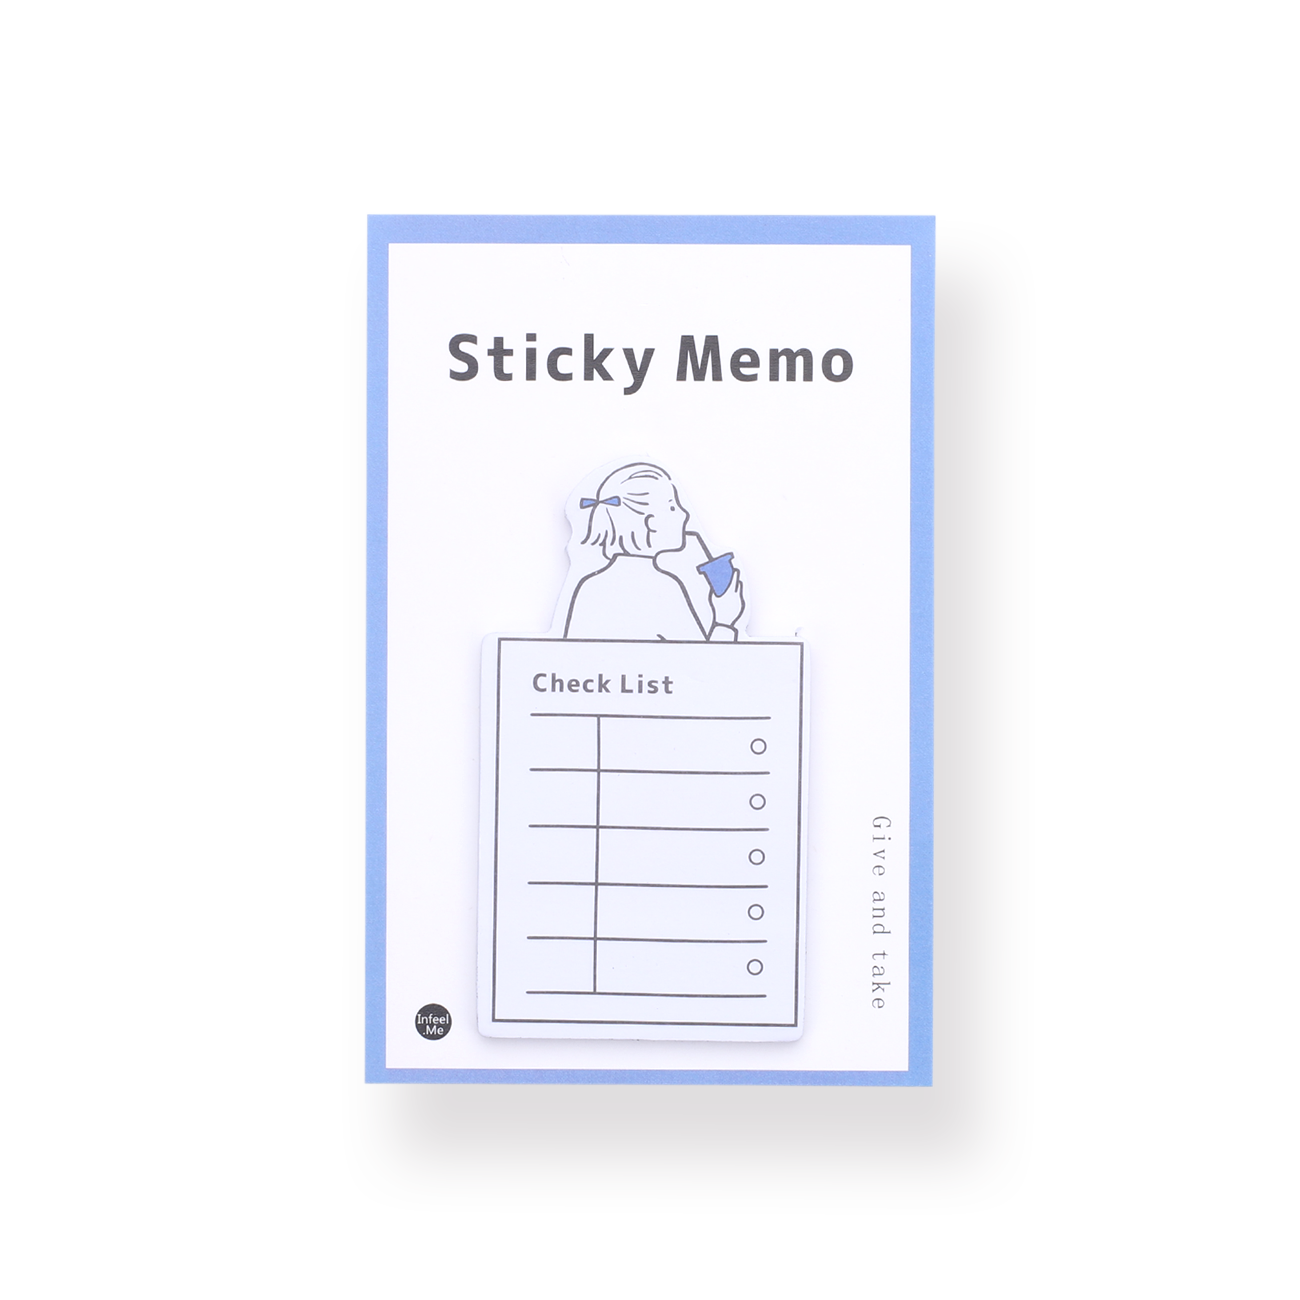 Sticky Memo - Checklist